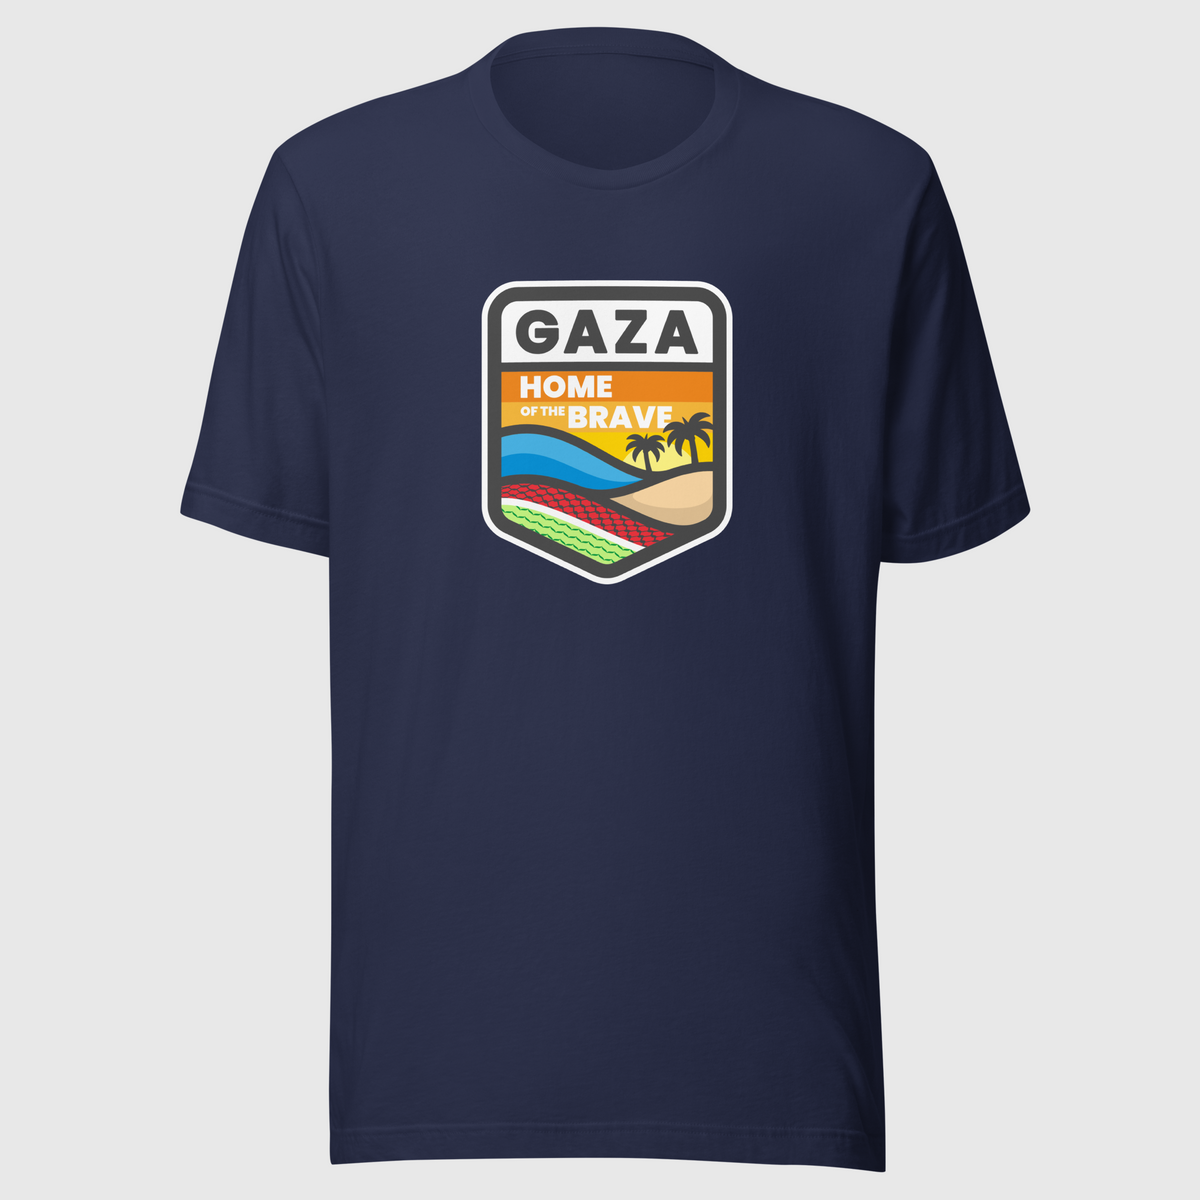 Gaza Brave t-shirt - 009TSS-L-B1